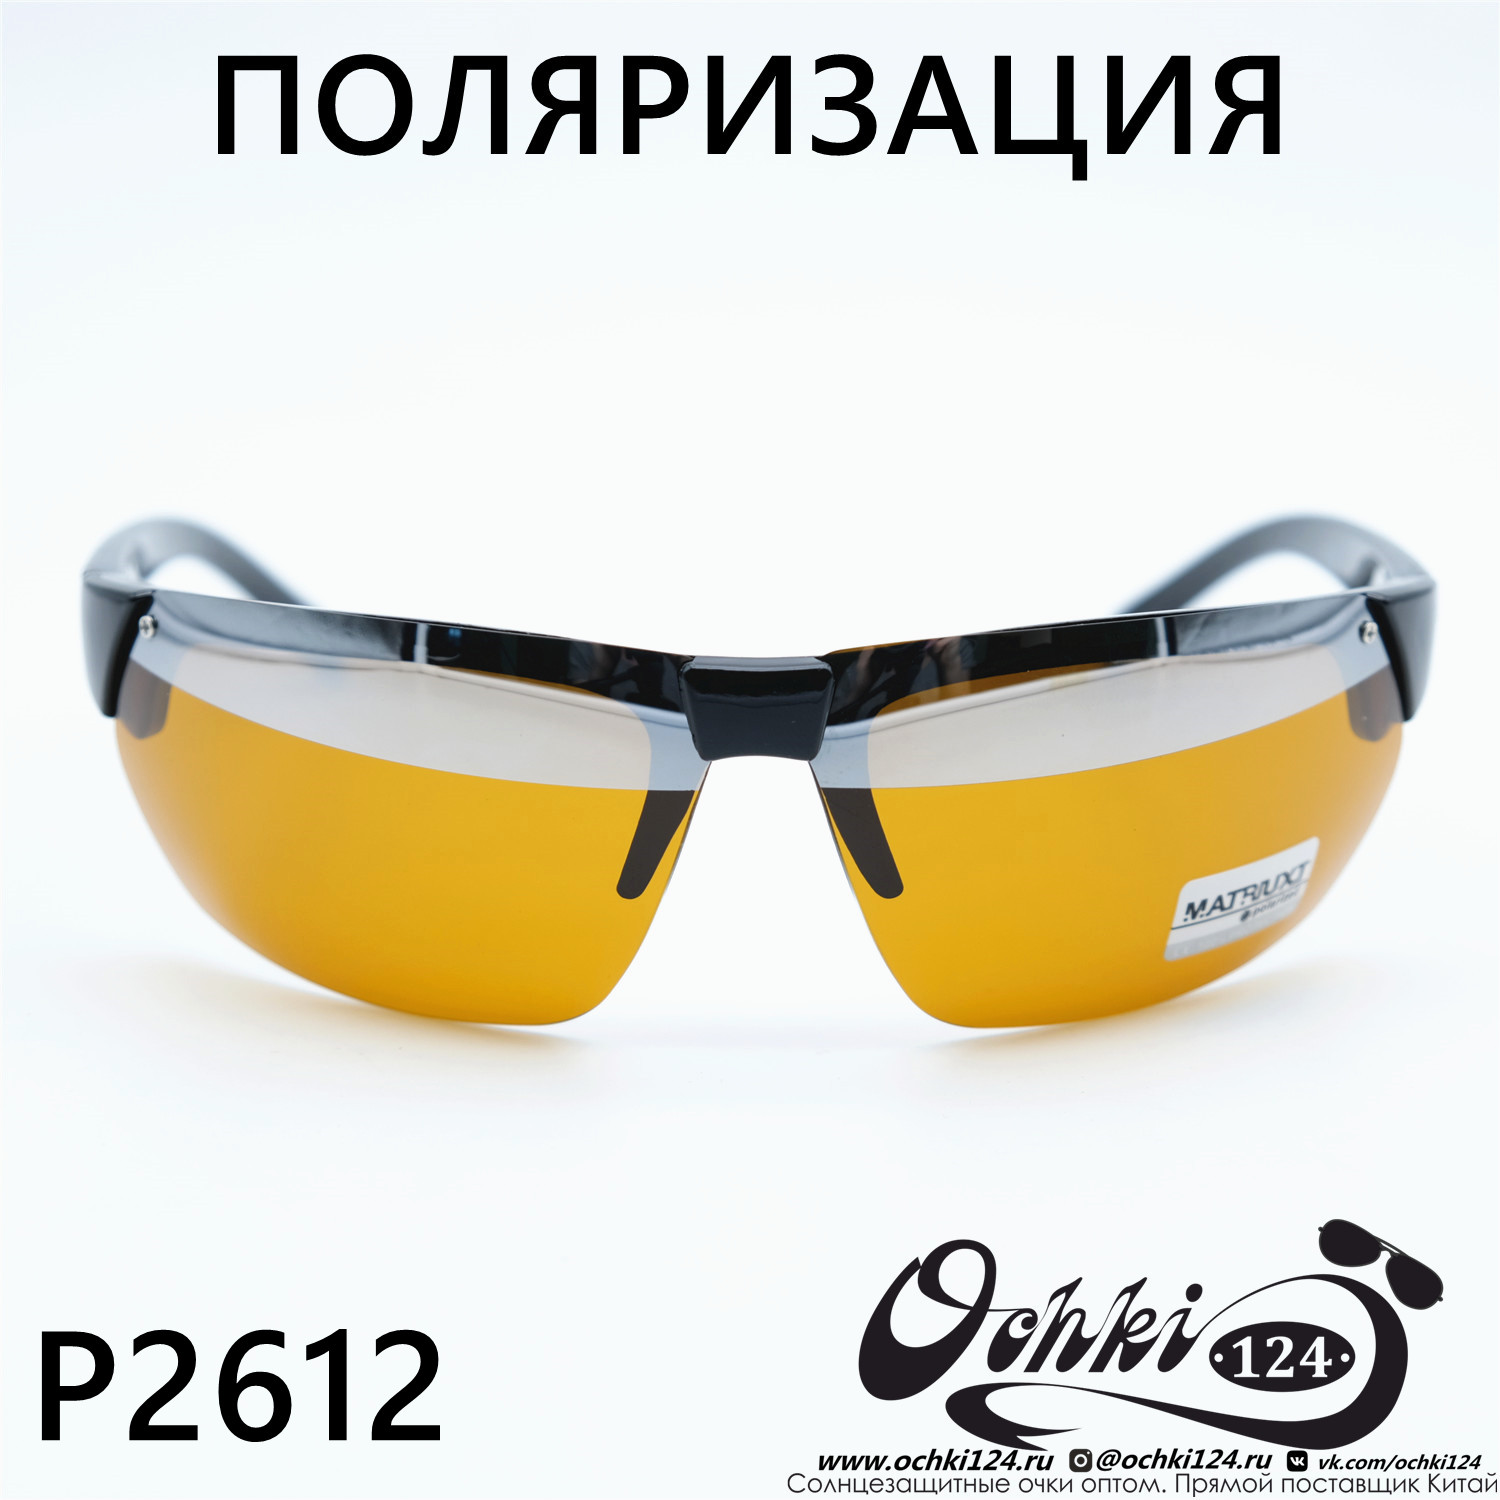  Солнцезащитные очки картинка Мужские MATRIUXT  Прямоугольные P2512-C3 